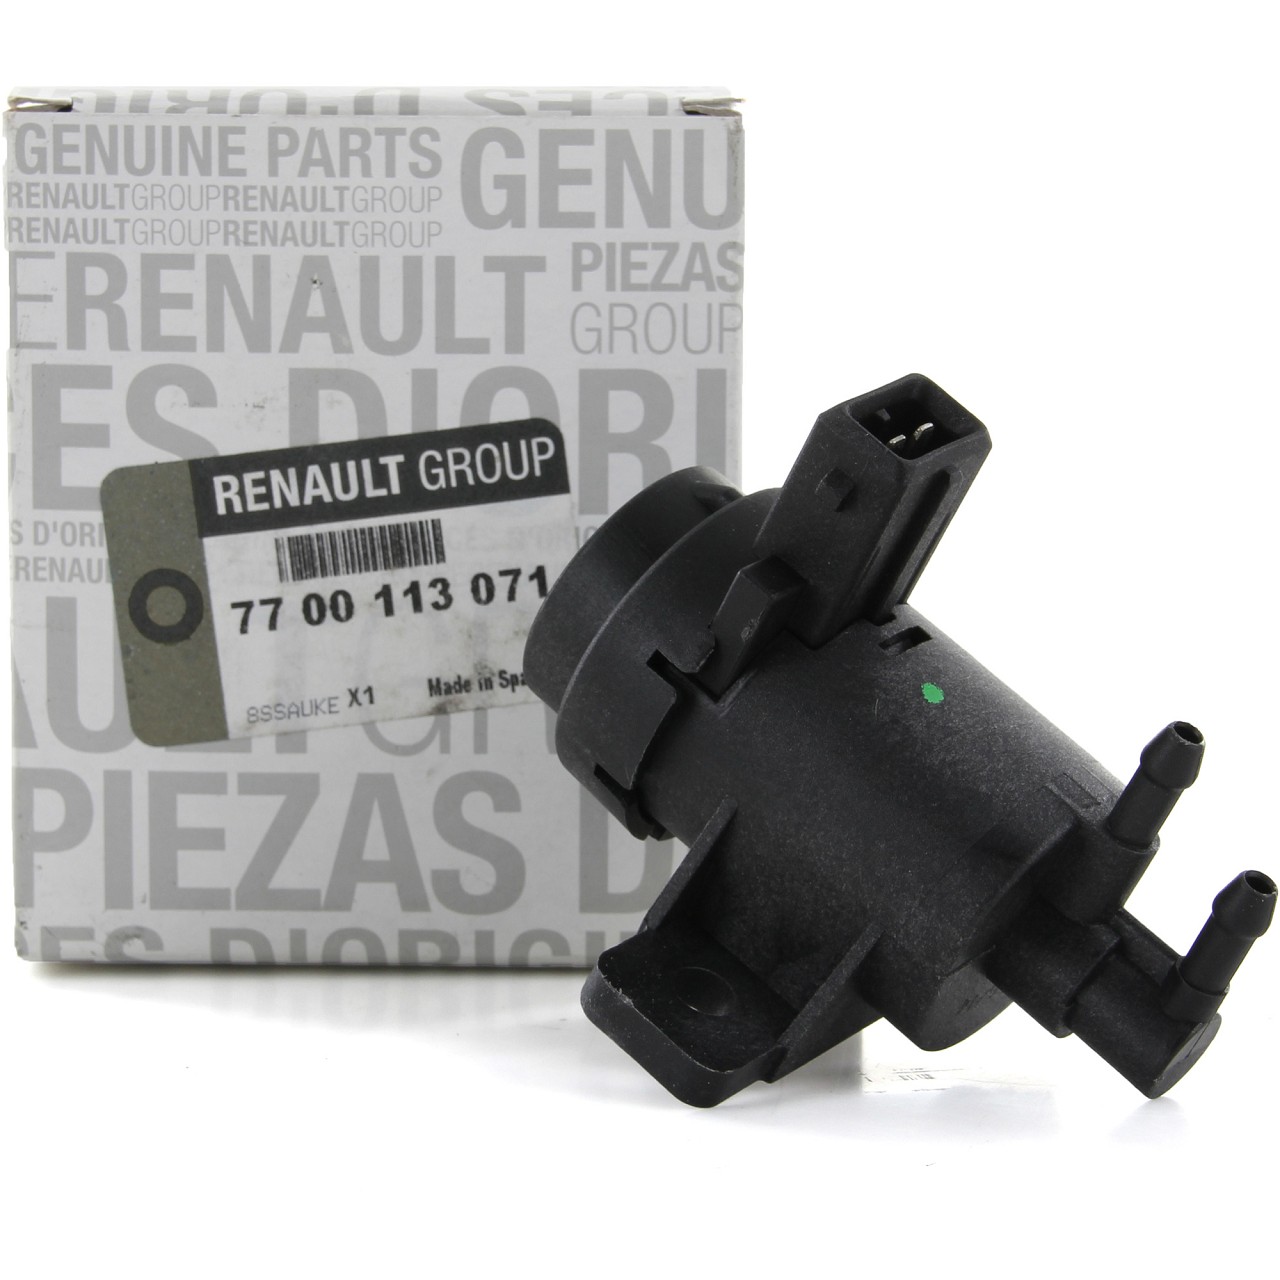 ORIGINAL Renault Druckwandler Magnetventil Elektroventil Turbolader 7700113071